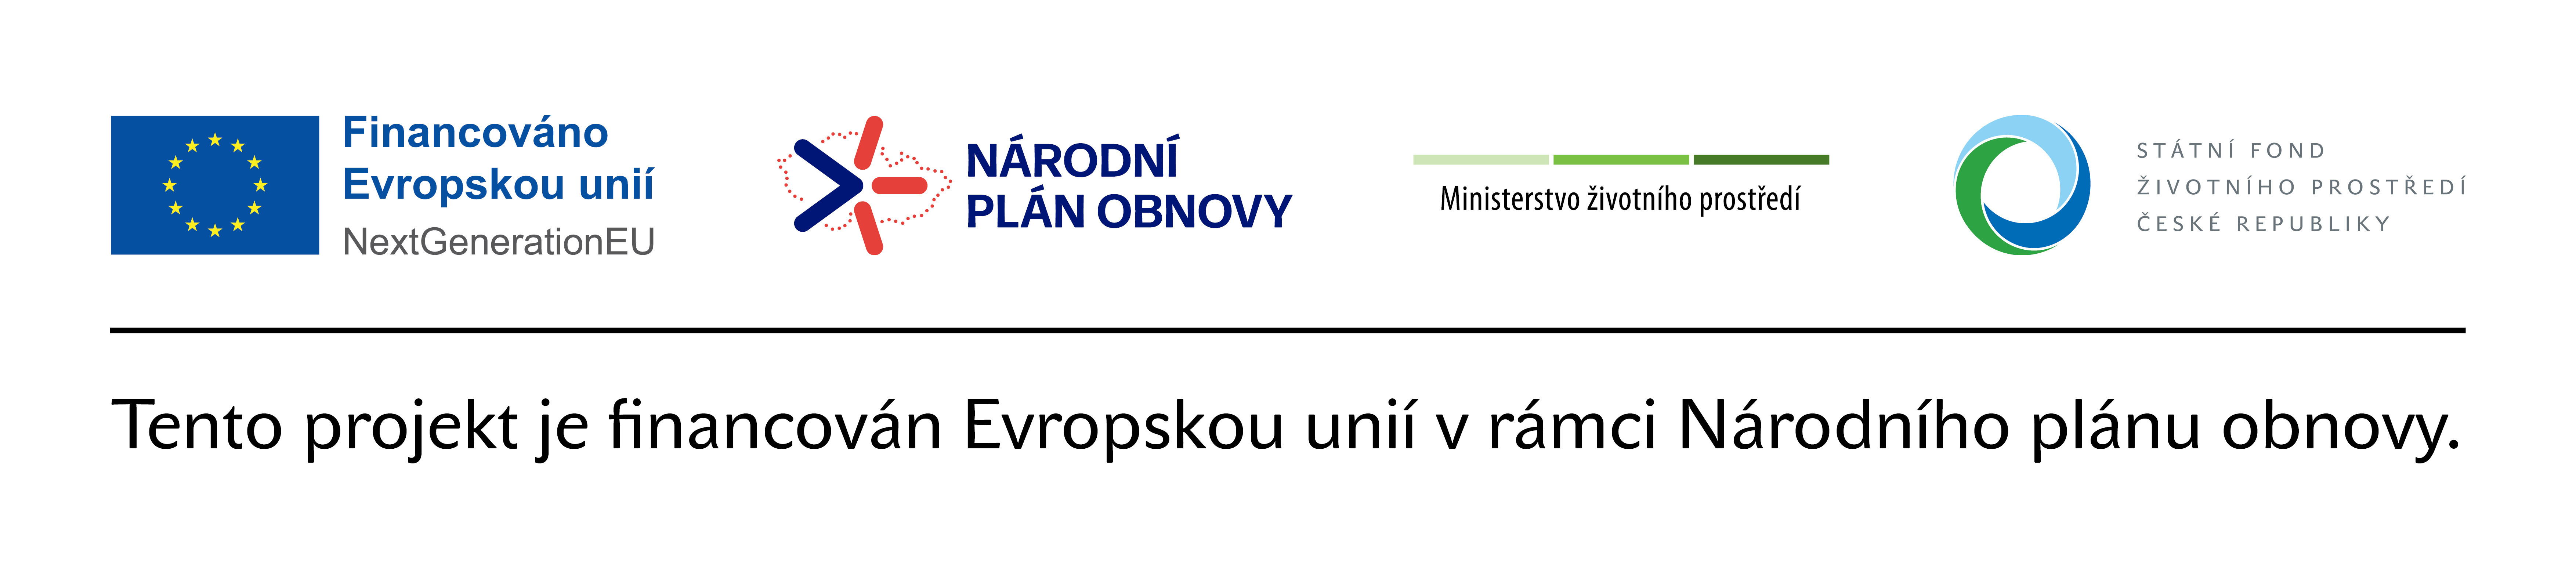 I Energetická osvěta a dotační poradenství MAS VLTAVA, z.s.